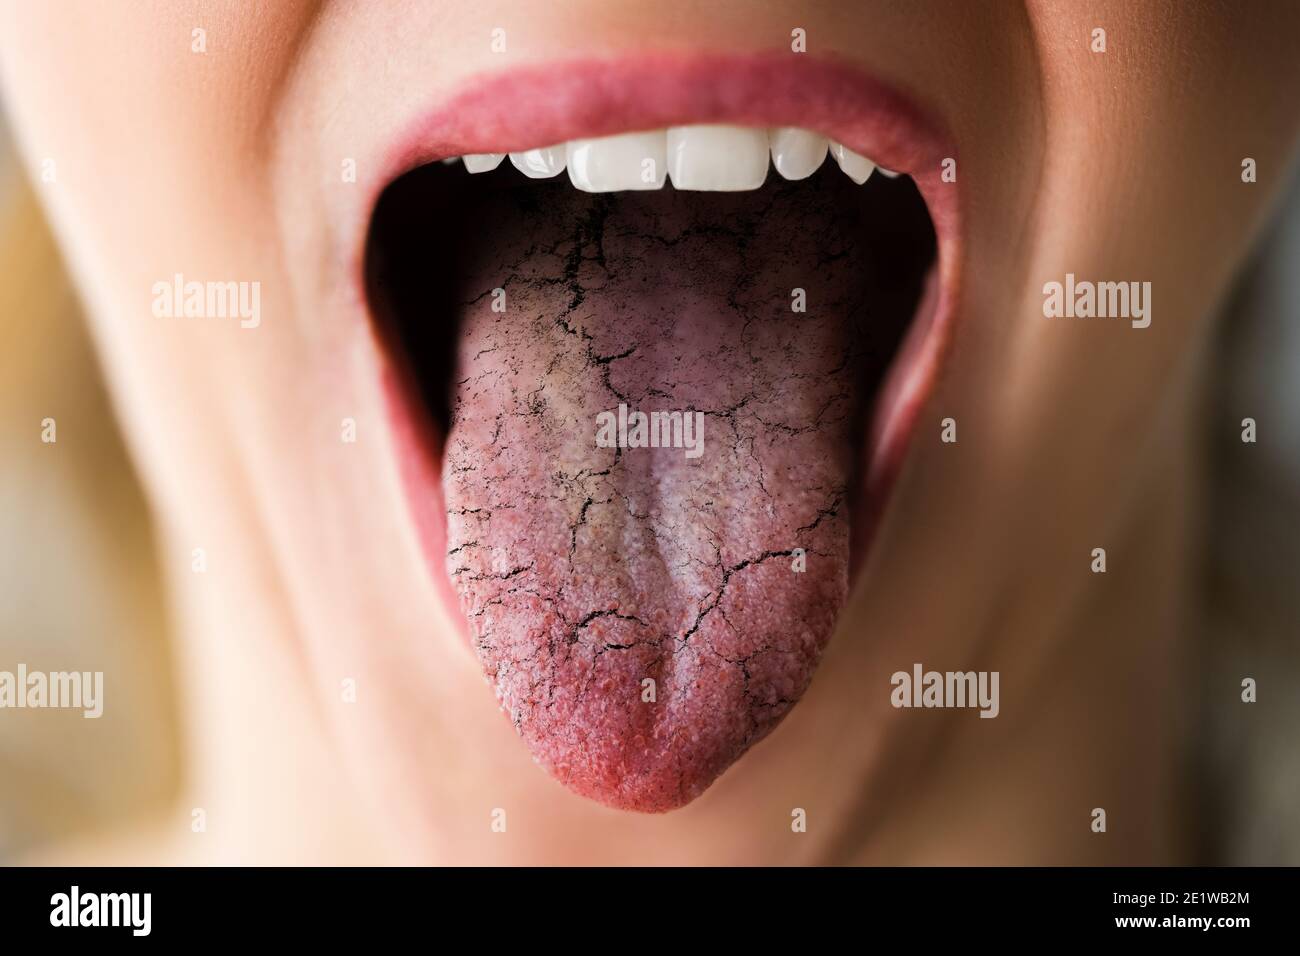 La langue de la femme avec la candidose et la douleur de mauvaises bactéries Banque D'Images